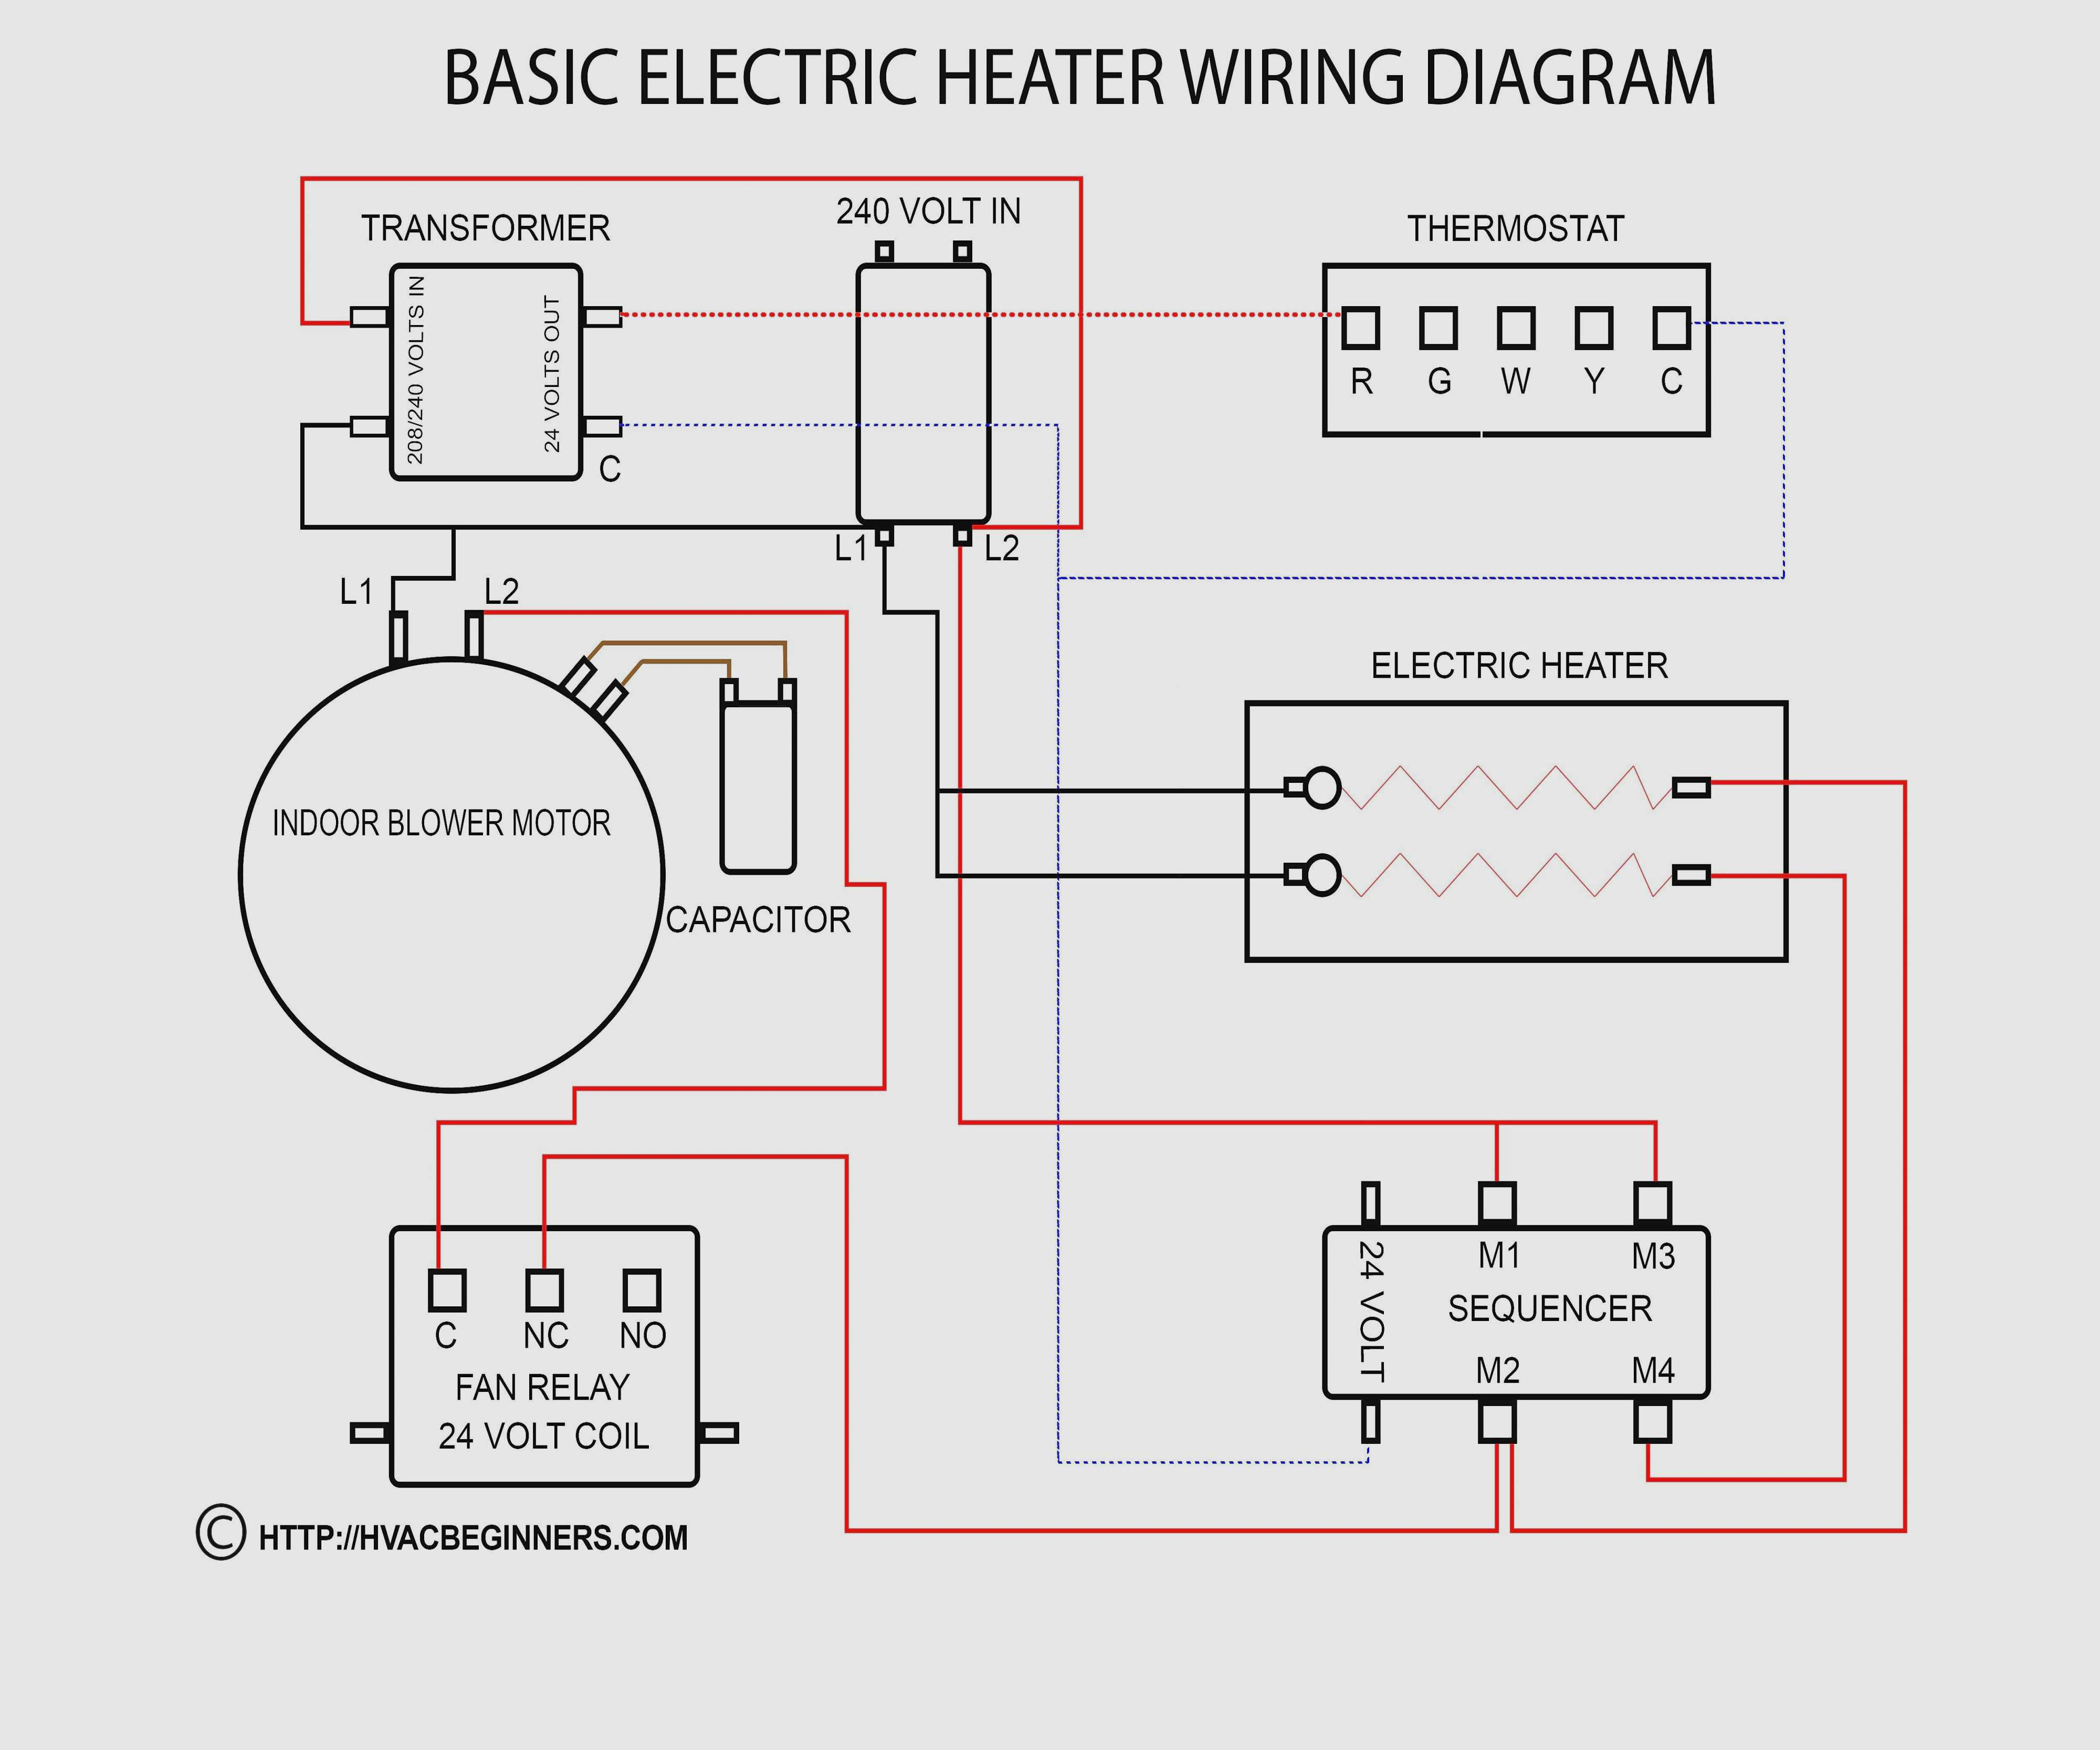 Circuit Diagram Maker Circuit Diagram Helper Wiring Diagram Web